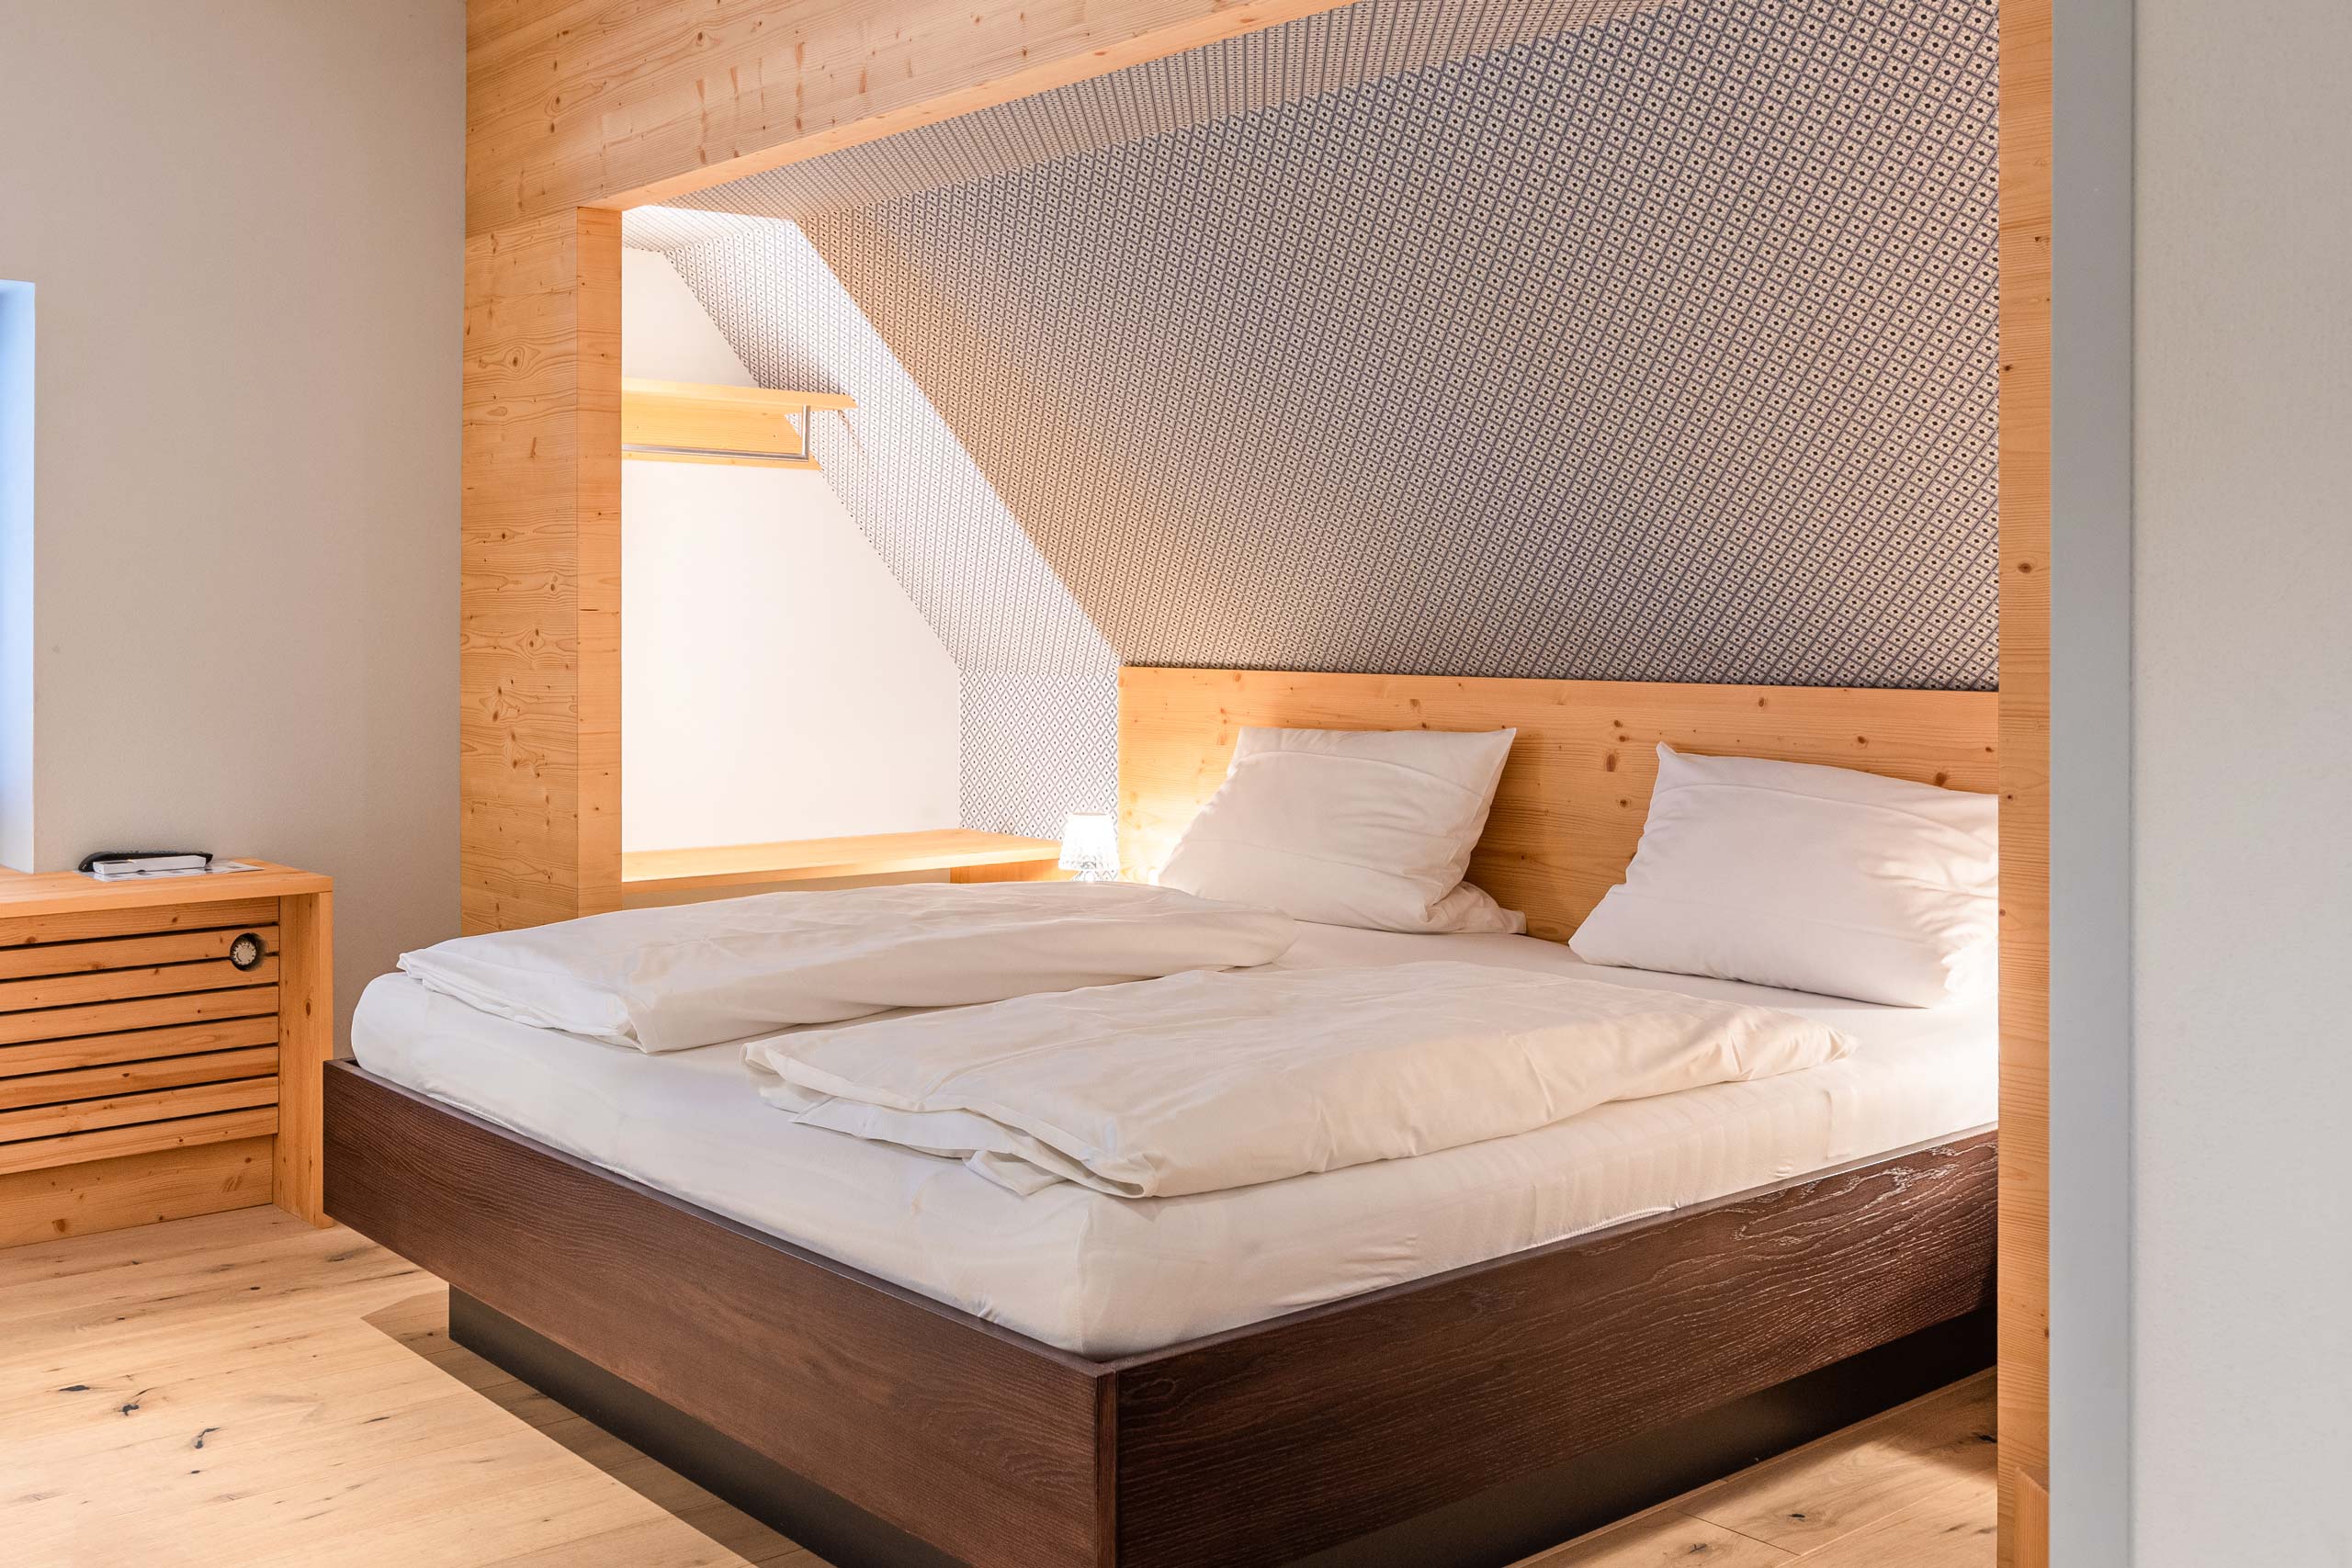 schickes Bett aus Holz nach Maß mit schöner Maserung und natürlichem Aussehen Look n Feel mit hellem Holz und schickem Muster auf der Tapete